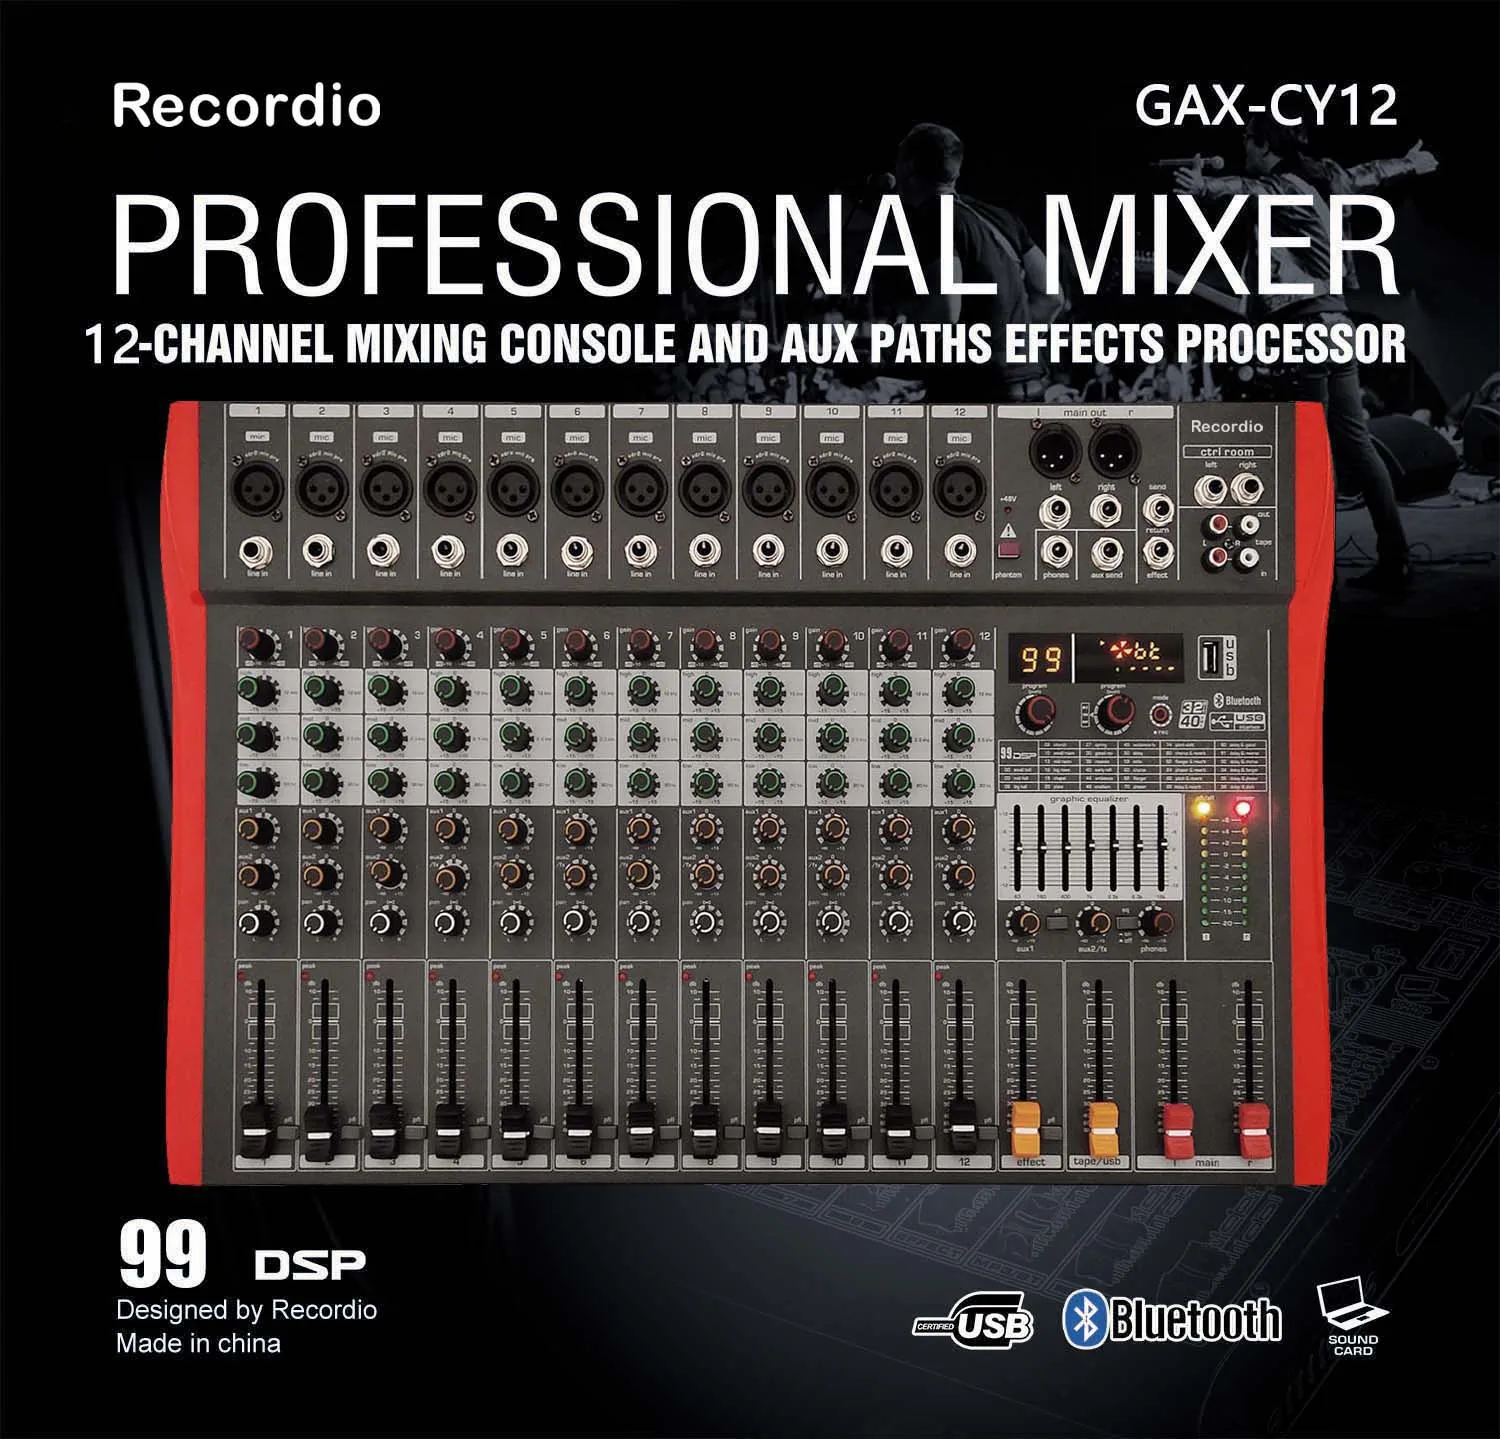 GAX-CY12 Профессиональный 12-канальный микшерная консоль с Blueteeth dj микшер аудио 99 dsp-эффекты фантомного питания 48V USB